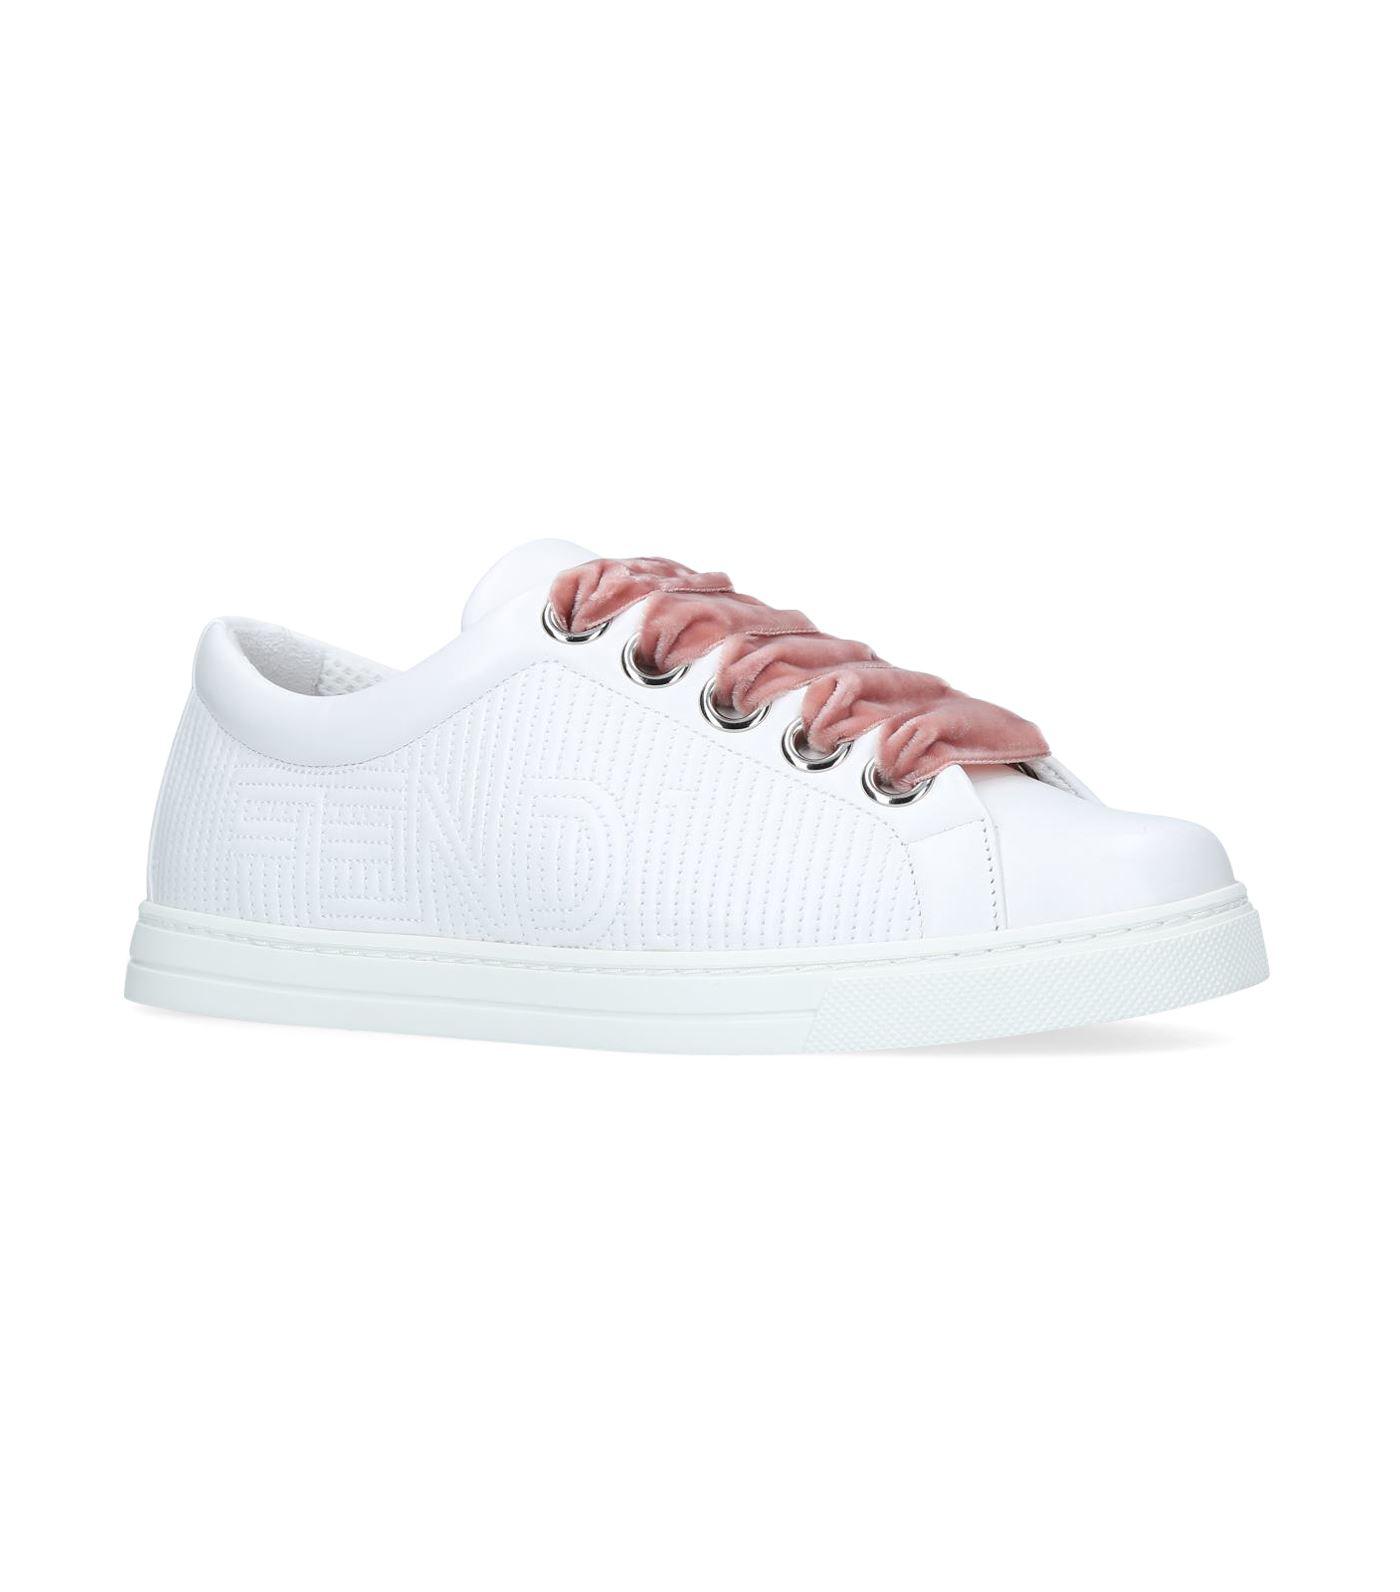 Fendi Velvet Lace Sneakers in White - Lyst